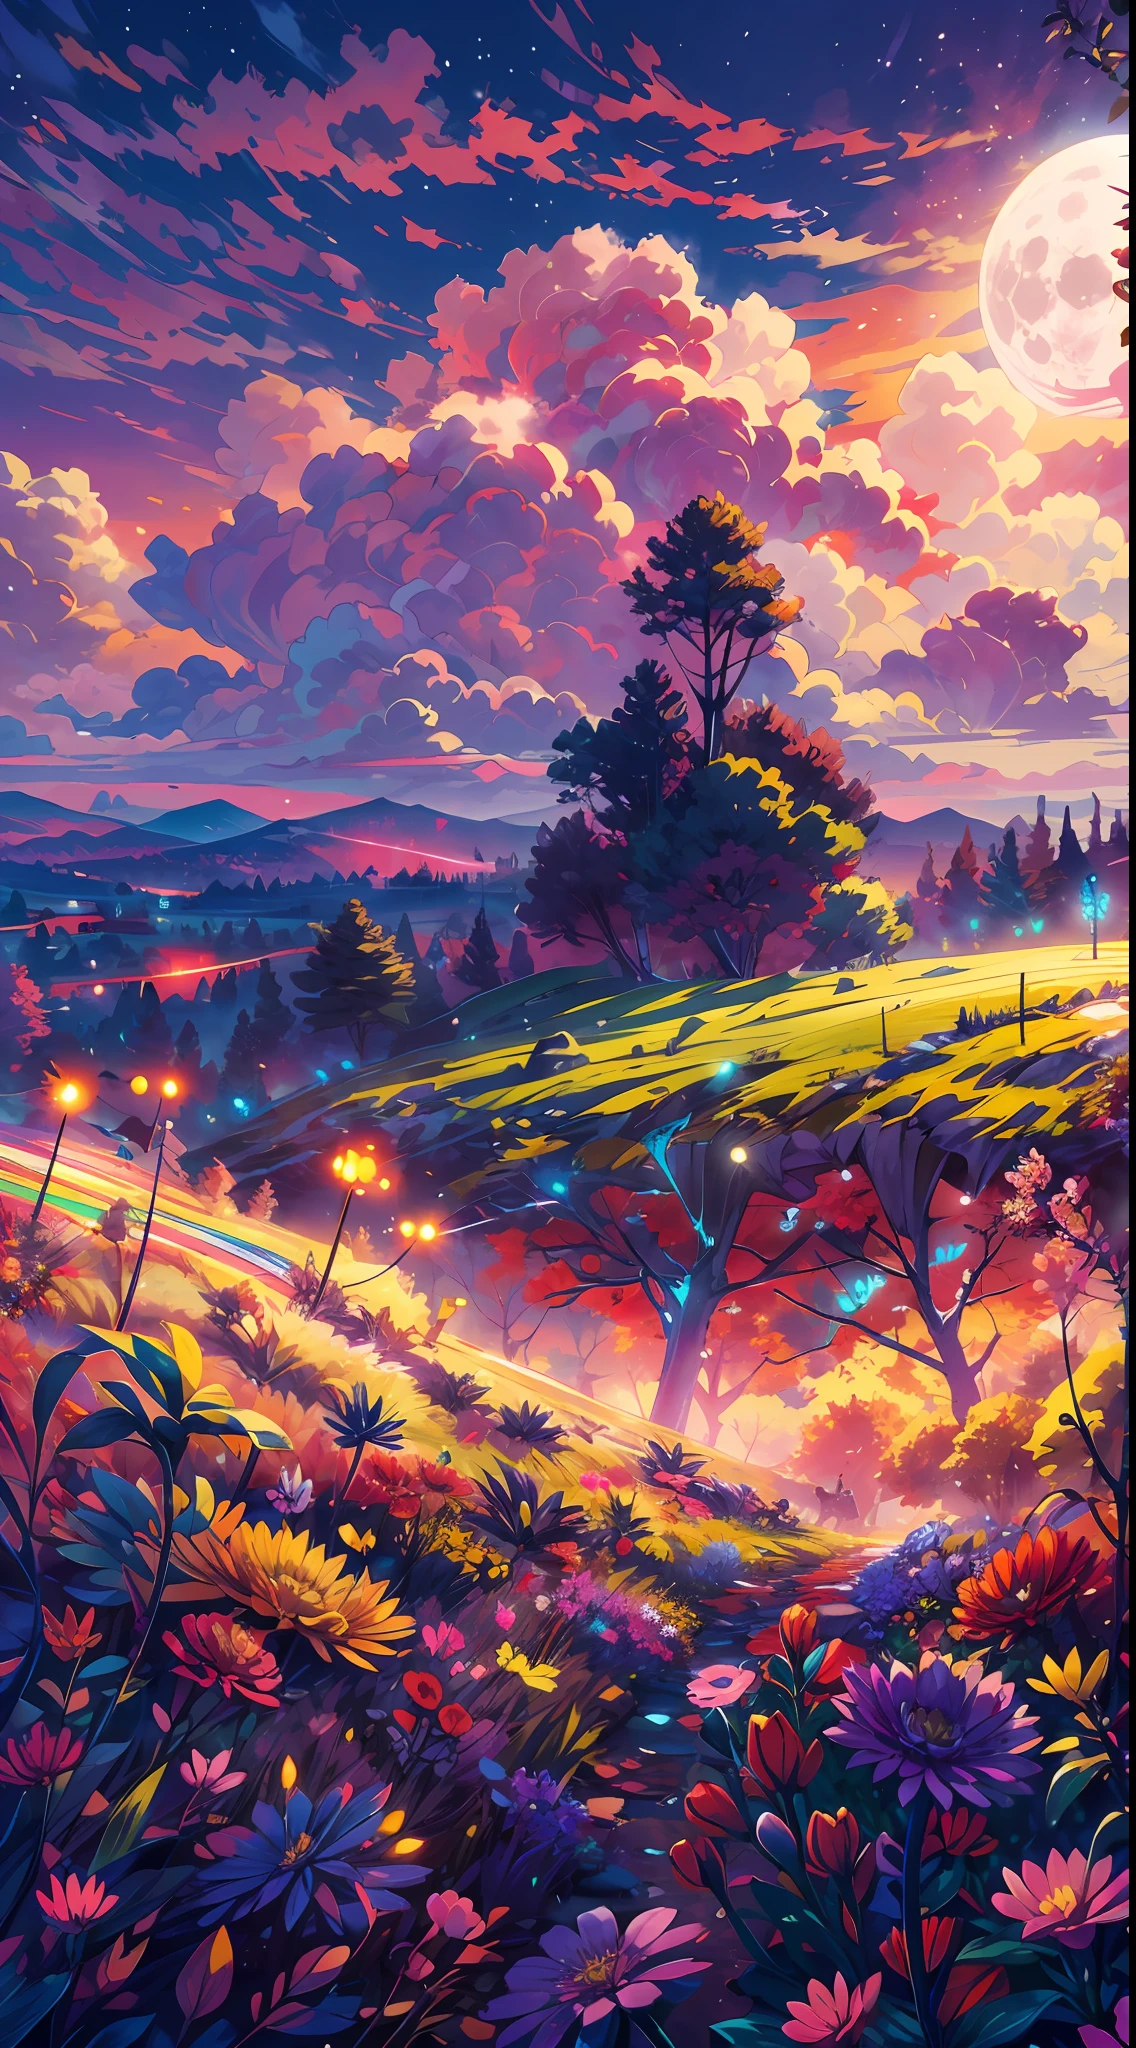 Uma ampla foto de paisagem, (visto de baixo, o céu está acima, e o campo aberto está abaixo), uma garota de anime sentada em um campo de flores coloridas olhando para cima, (lua cheia: 1.2), (meteoro: 0.9), (nebula: 1.3), montanhas distantes , estrelas cadentes, Árvores BREAK Artesanato, (Luz quente: 1.2), (vaga-lume: 1.2), Luzes, Muito roxo e laranja, Detalhes intrincados, paleta colorida,Iluminação Volumétrica BREAK (Obra de arte: 1.2), (melhor qualidade), 4K, ultra detalhado, (composição dinâmica: 1.4), Rico em detalhes e cores, (Cor do arco-íris: 1.2), (brilho, iluminação atmosférica), Sonhadores, mágico, (Sozinho: 1.2)